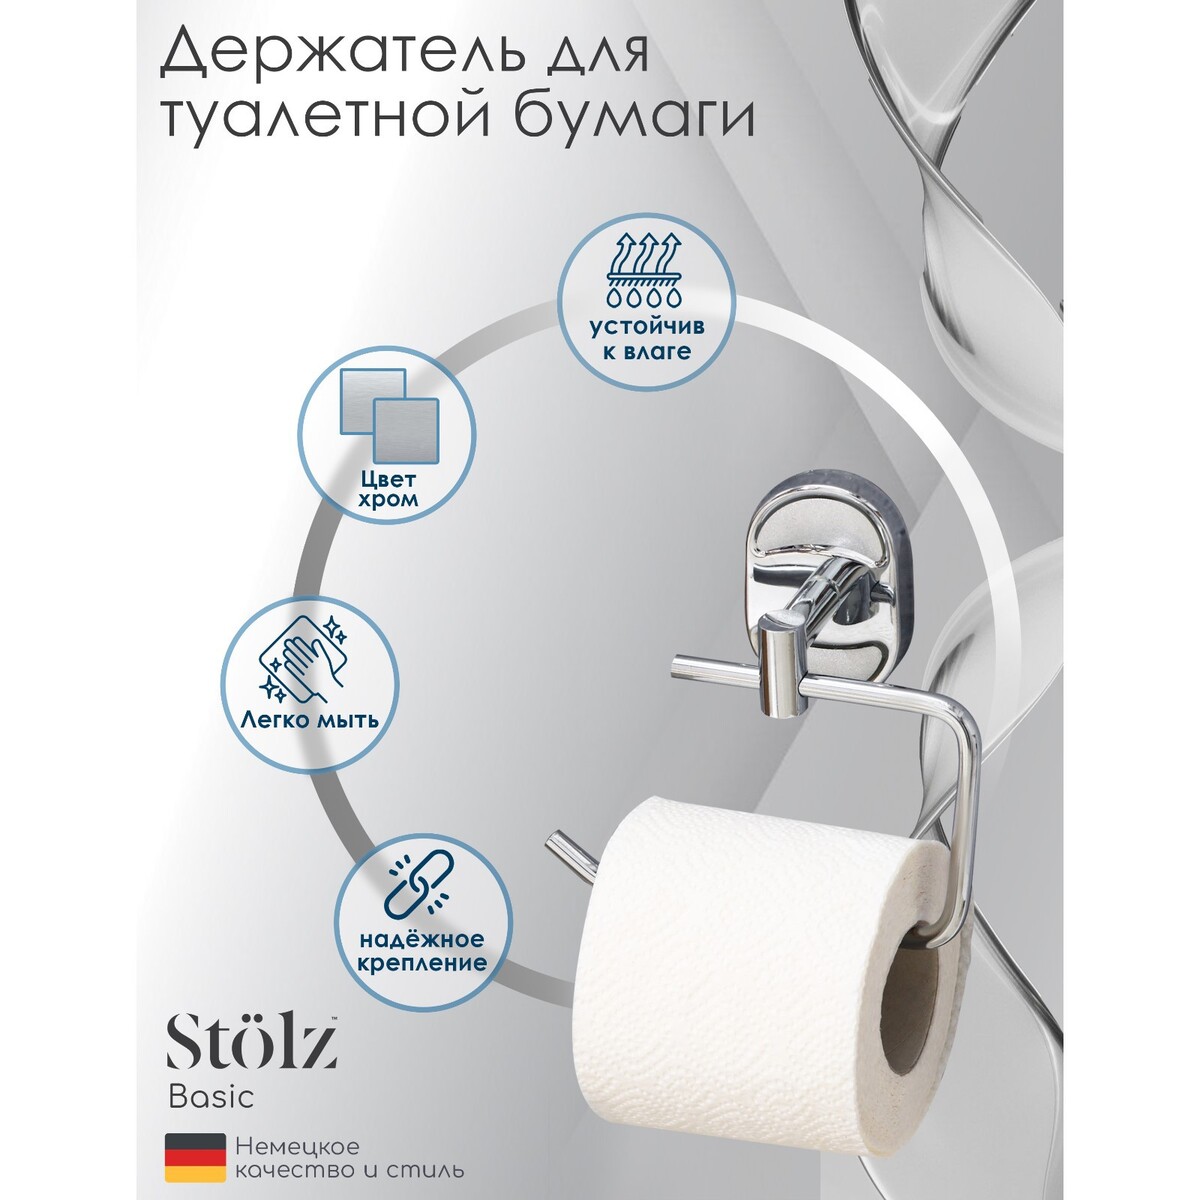 Держатель для туалетной бумаги штольц stölz жизнестойкое предприятие как повысить надежность цепочки поставок и сохранить конкурентное преимуще